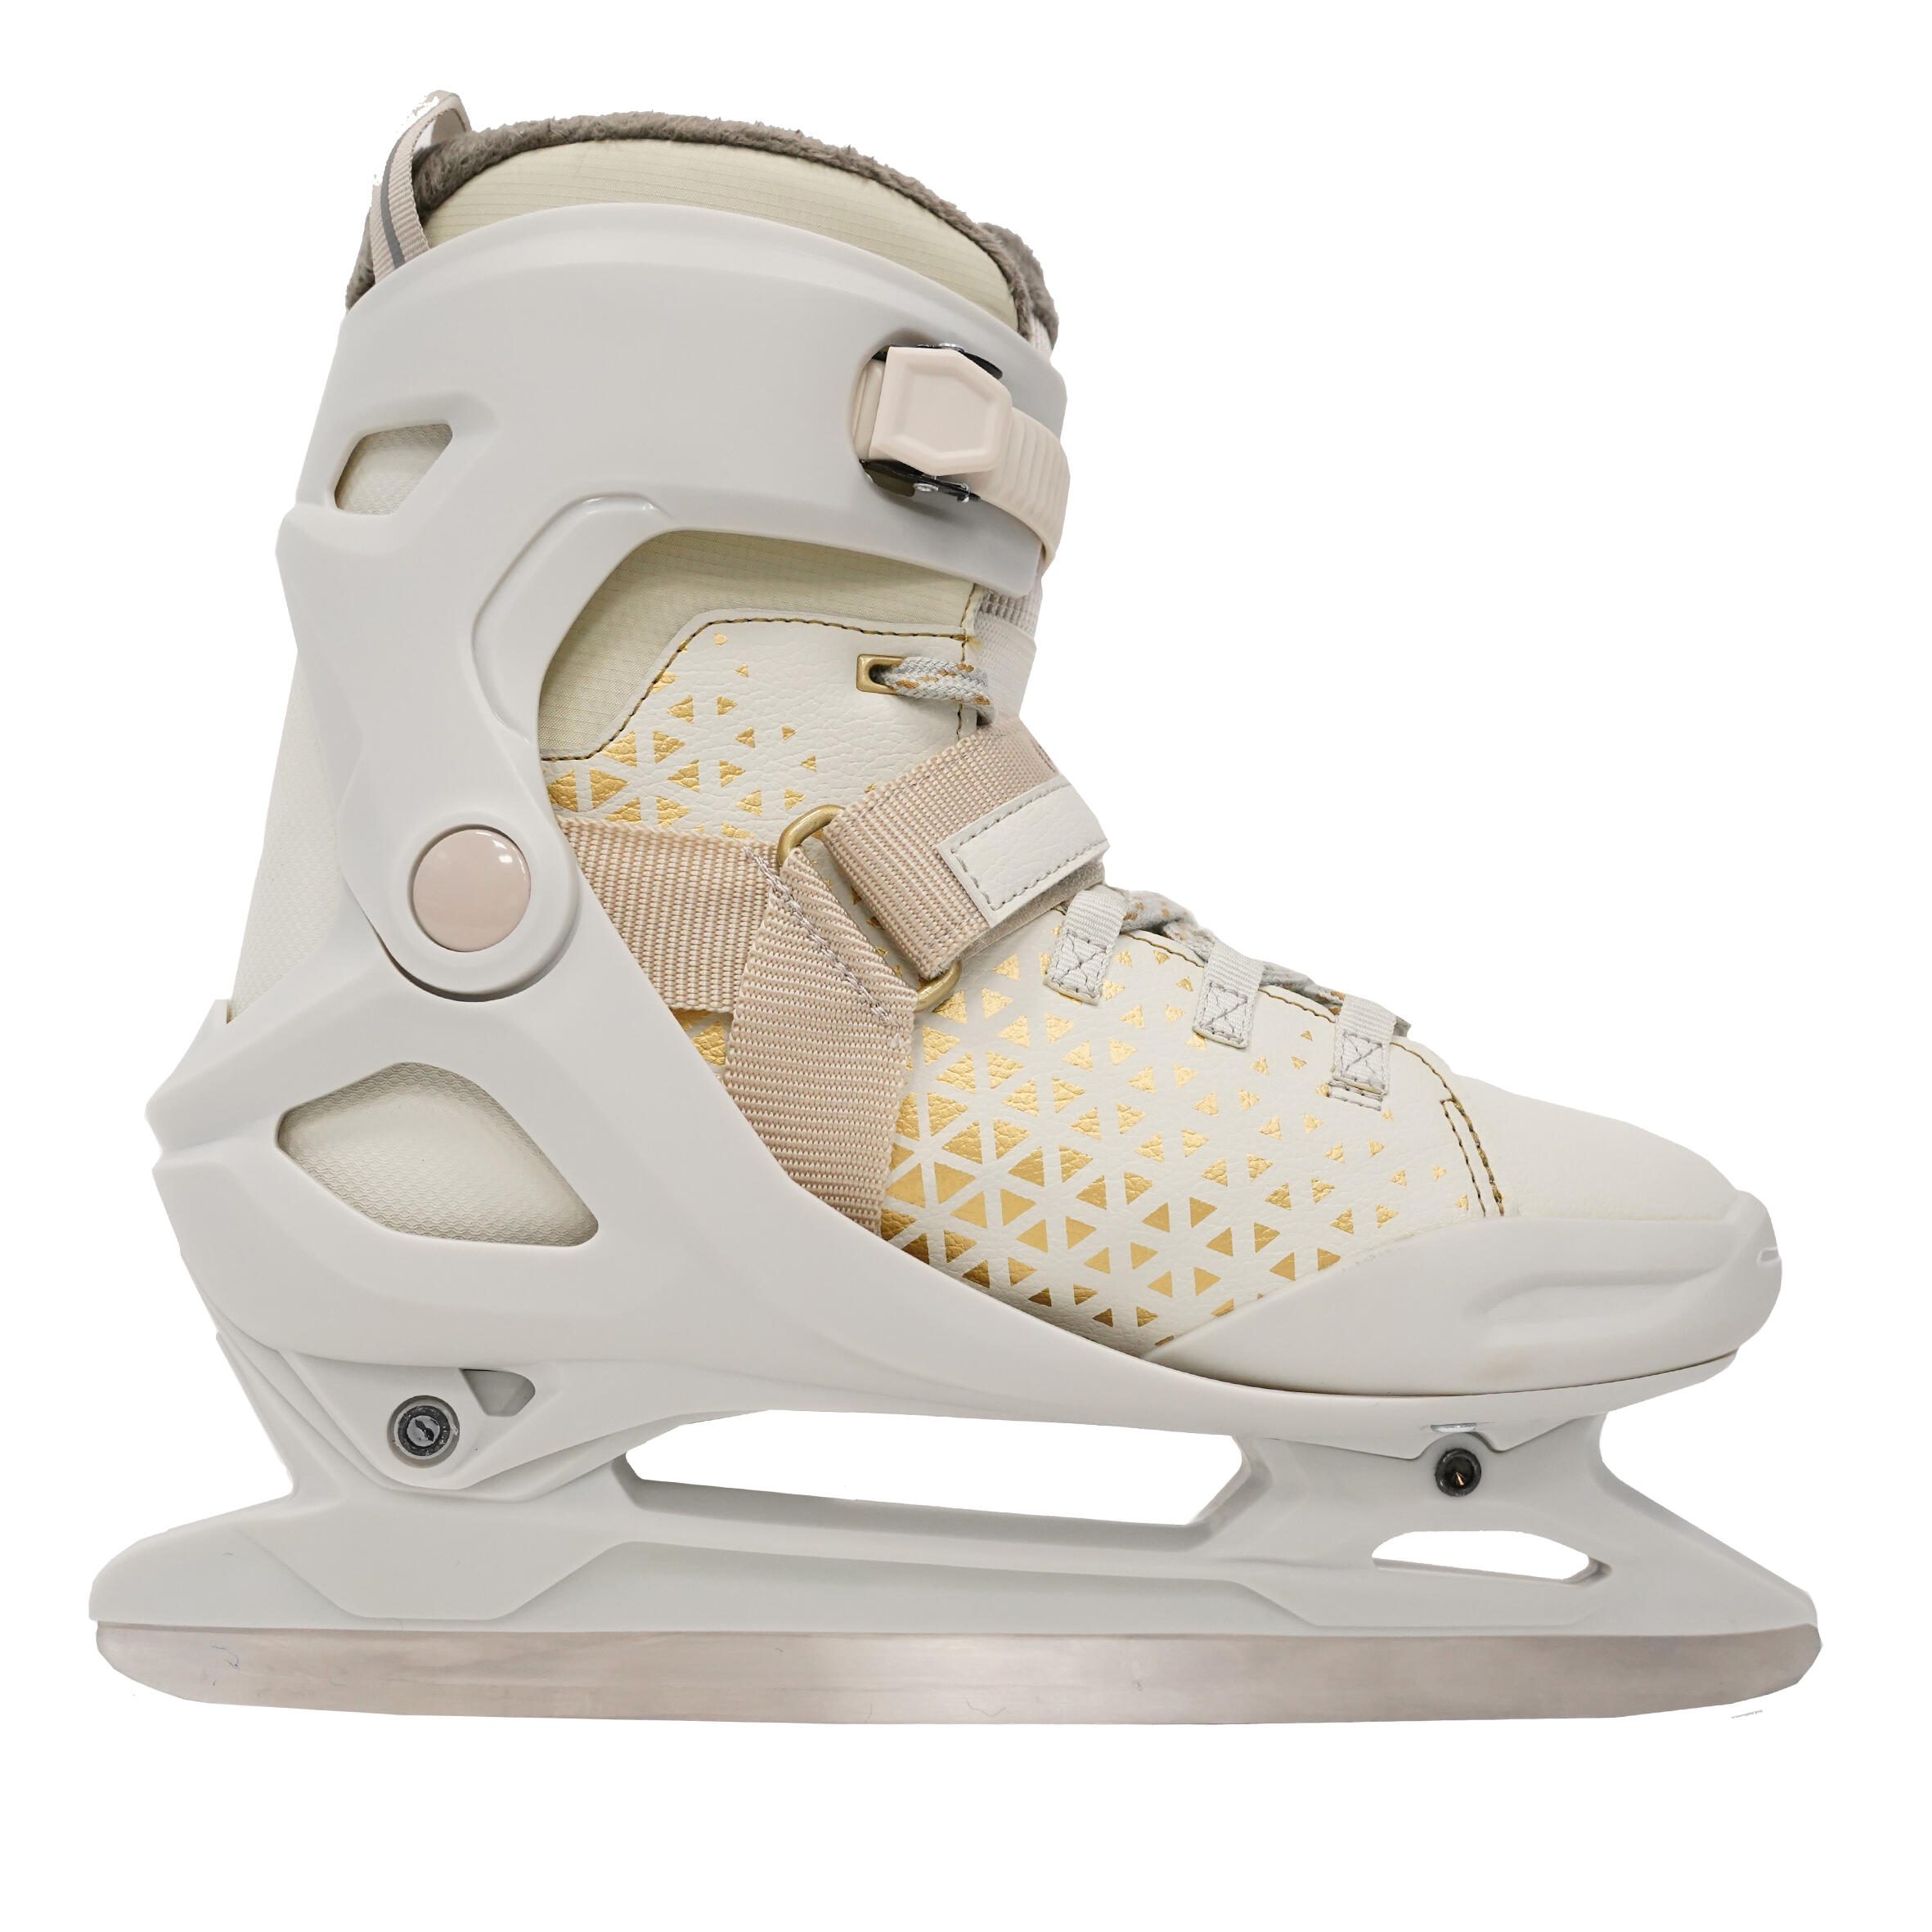 Women's Ice Skates - FIT 520 Warm White/Brown - OXELO